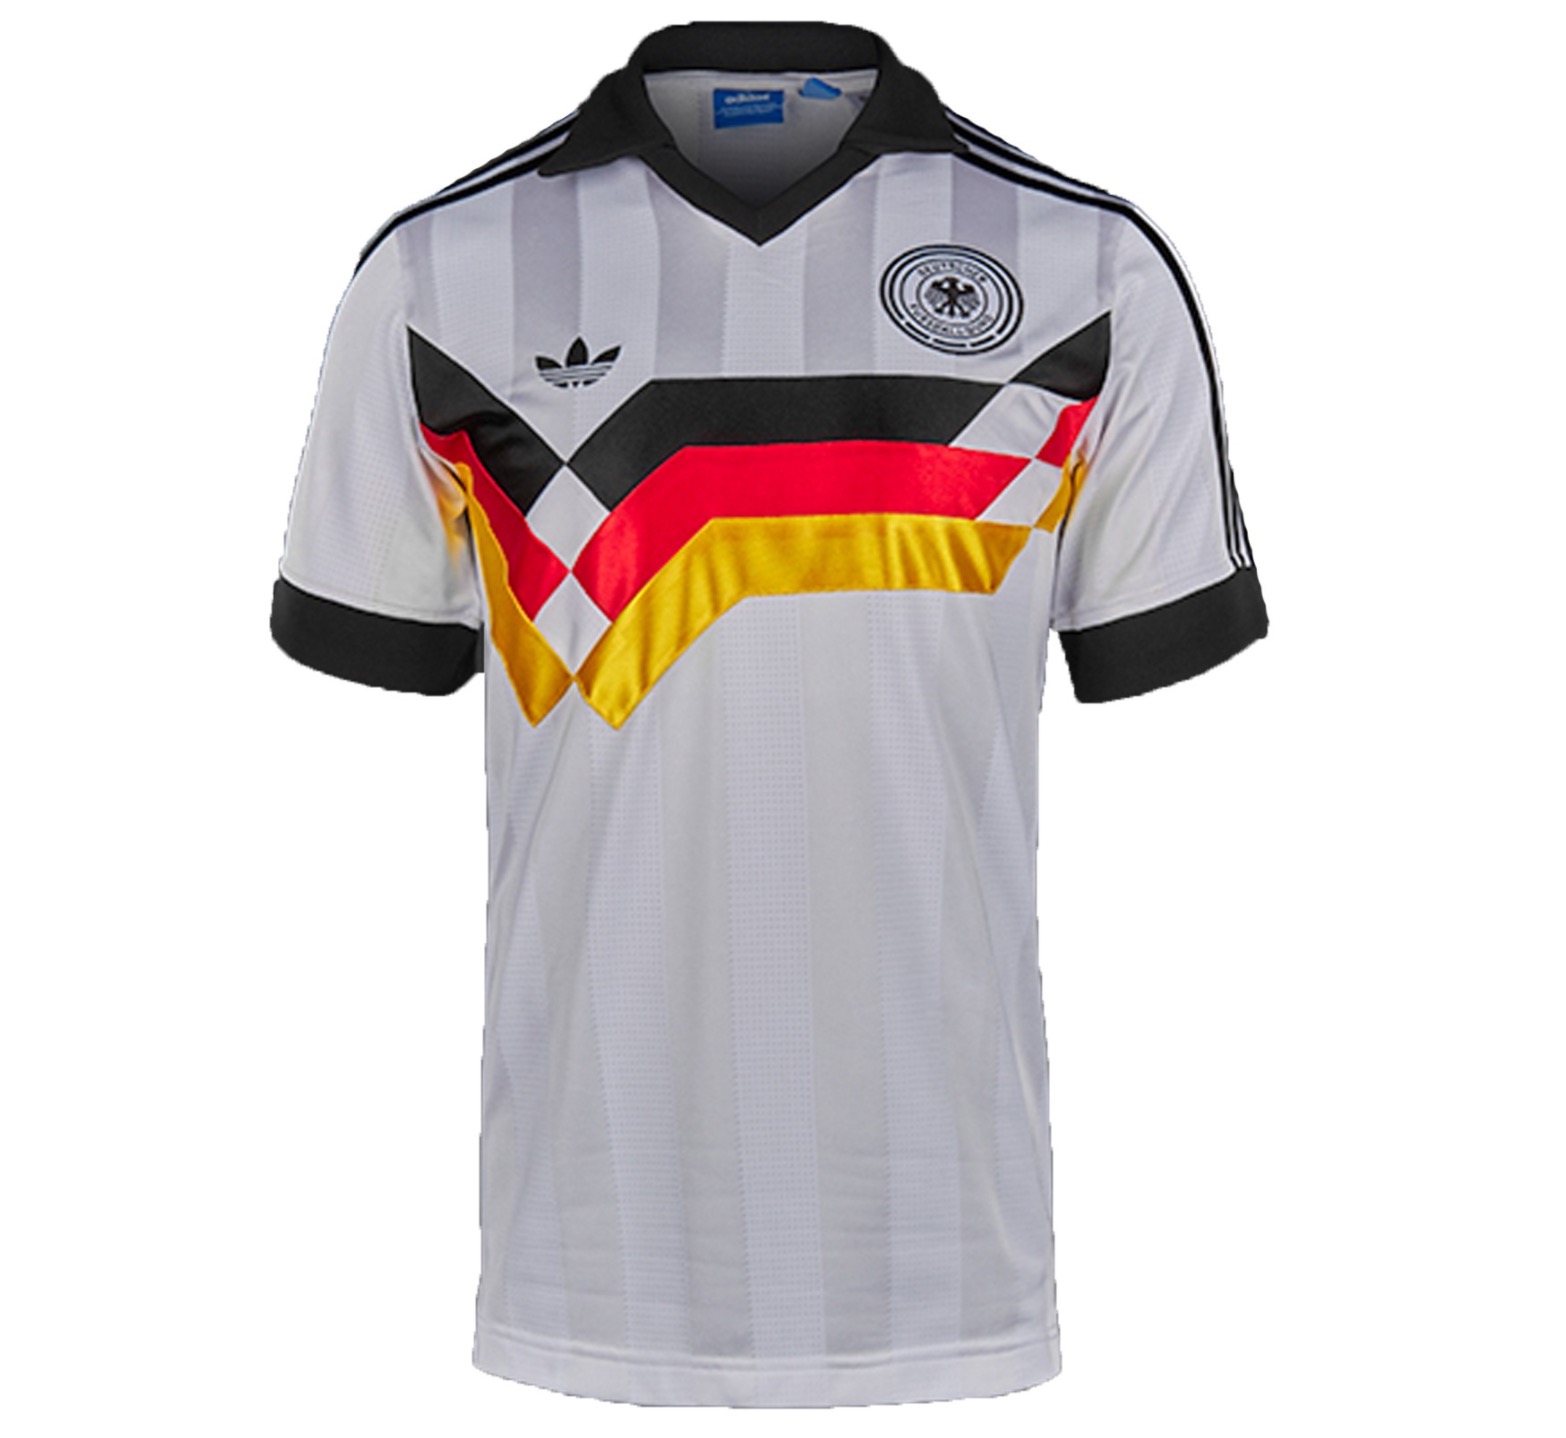 Adidas Originals Germany Home Herren Shirt für nur 19,99 Euro inkl. Versand